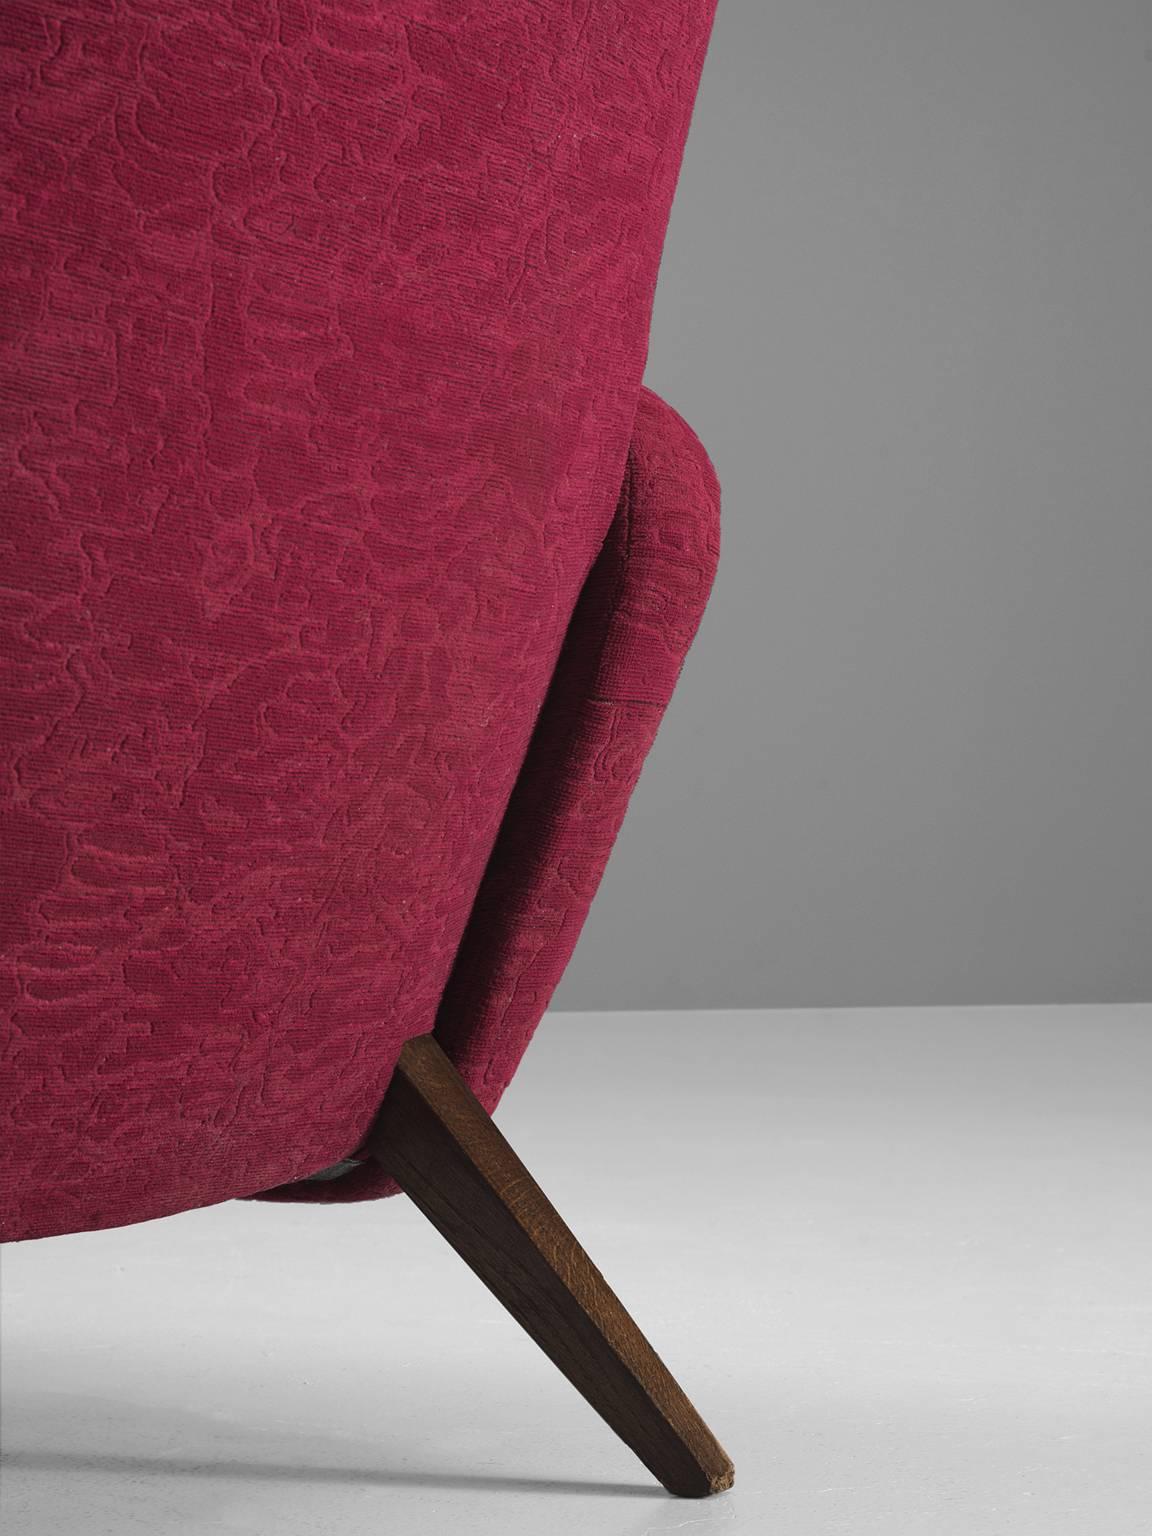 Italian Wingback Chair in Maroon Fabric 1